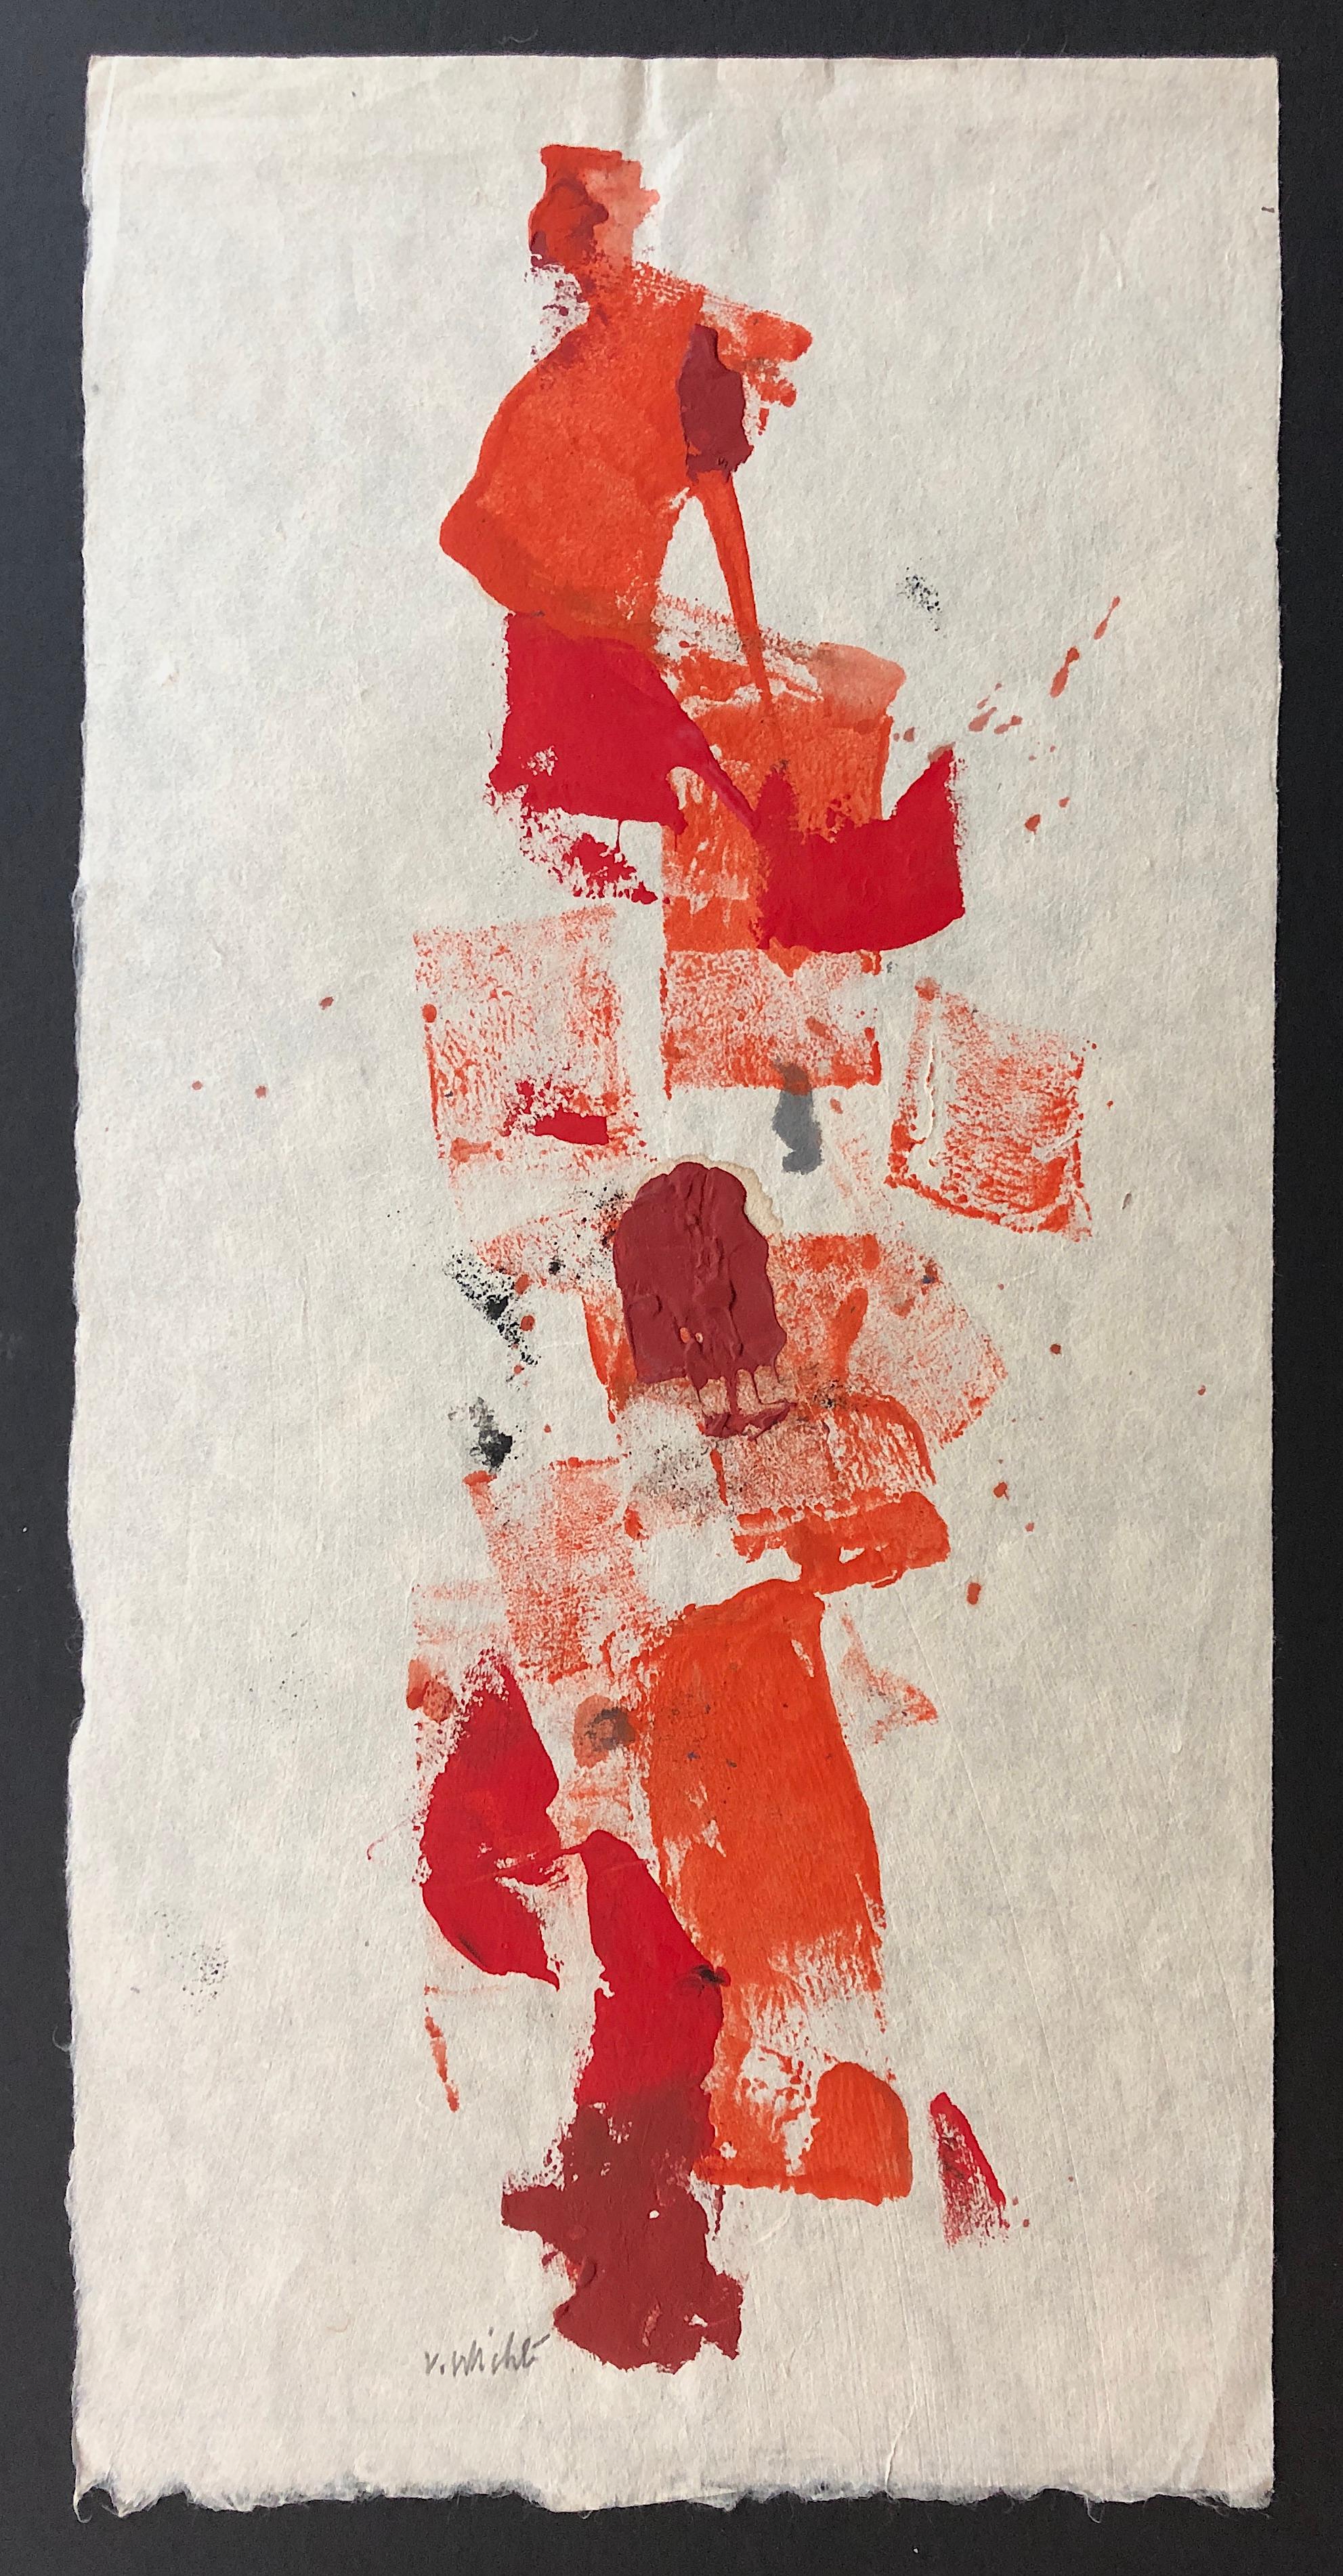 Abstrakte Abstraktion in Rot, Gemälde in Mischtechnik ohne Titel-009 von John Von Wicht – Art von John von Wicht